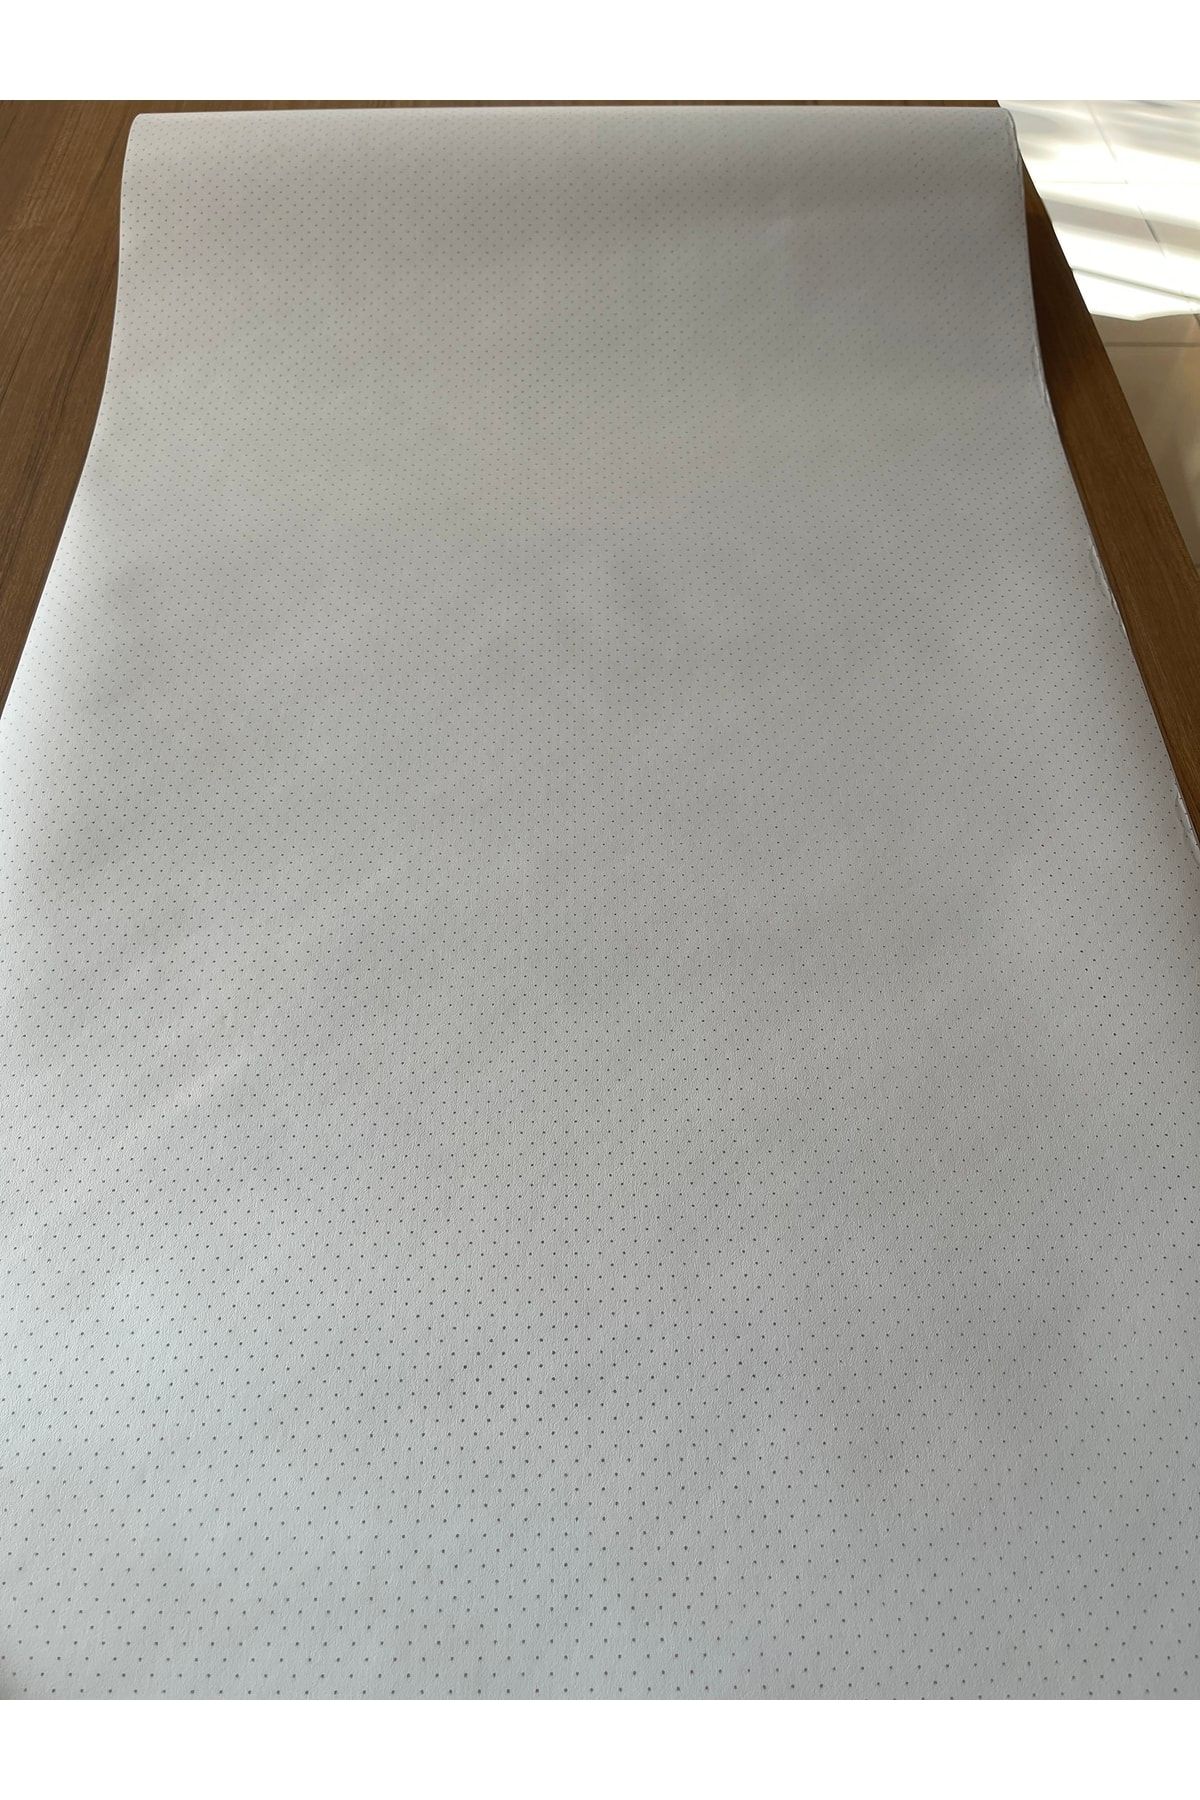 BAŞYAPI DİZAYN Beyaz Üzeri Gold Puantiyeli Ithal Duvar Kağıdı (5m²)